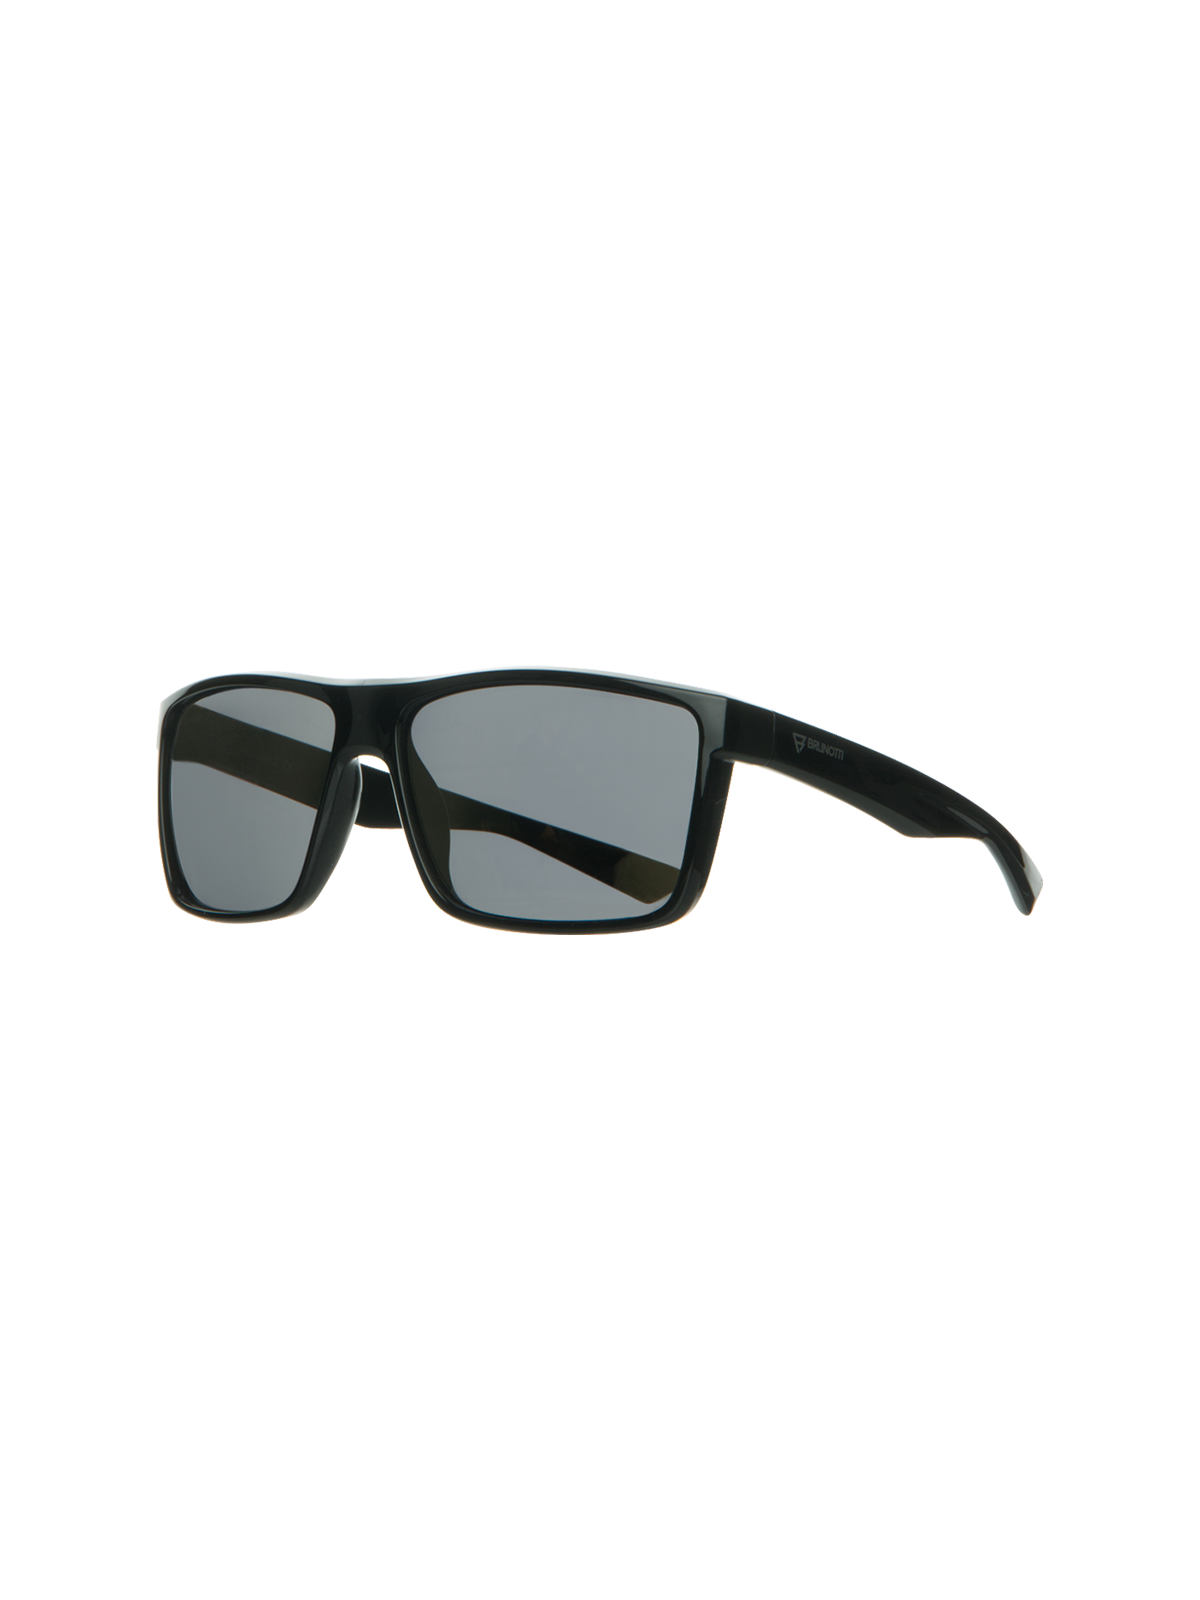 Lean Unisex Sunglasses